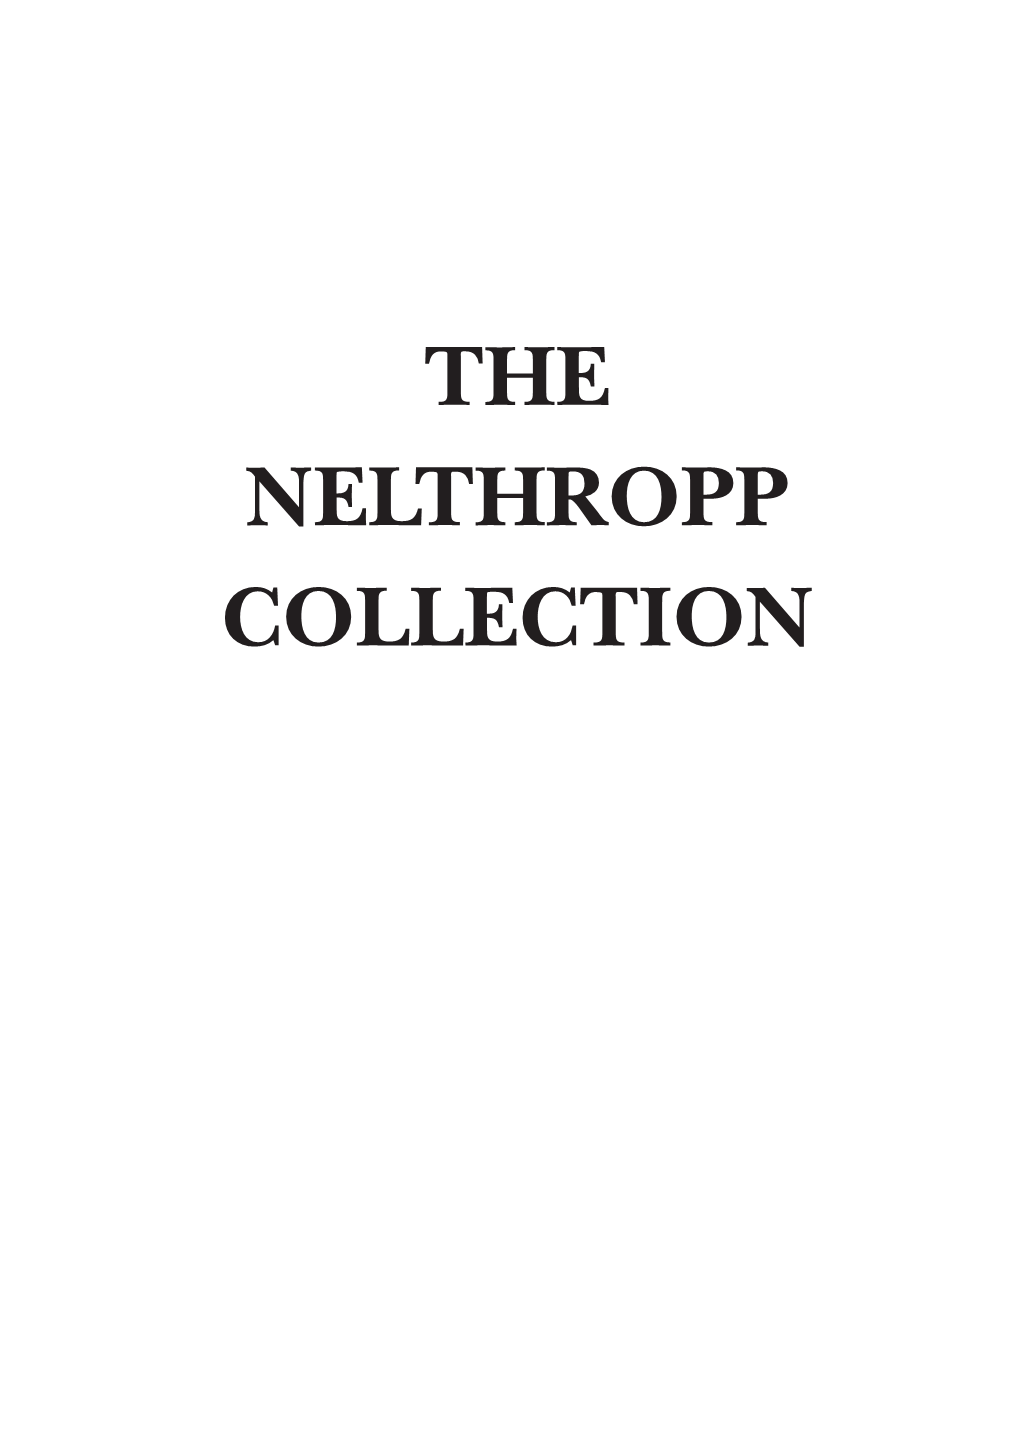 THE NELTHROPP COLLECTION the NELTHROPP COLLECTION Described in Henry Nelthropp’S Own Word